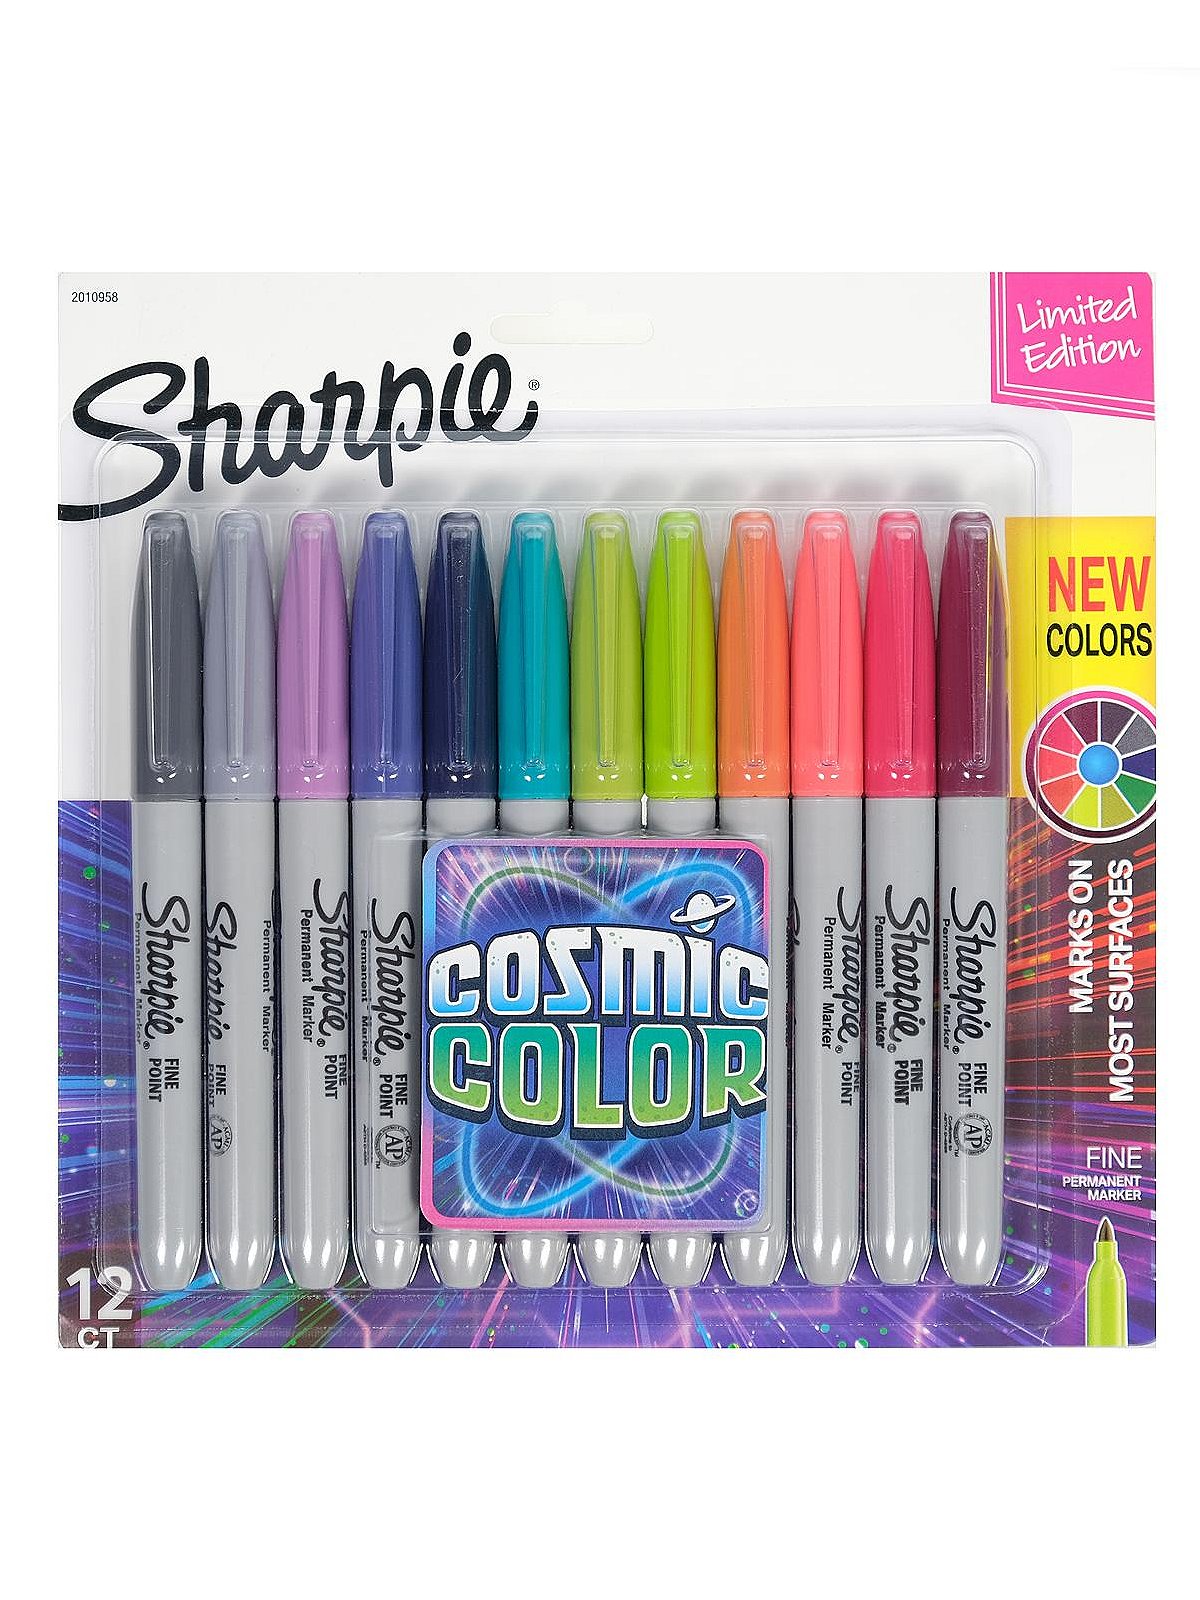 Gourmet Pens: @Shoplet Review: @Sharpie Premium Pen, Neon Markers &  Metallic Markers